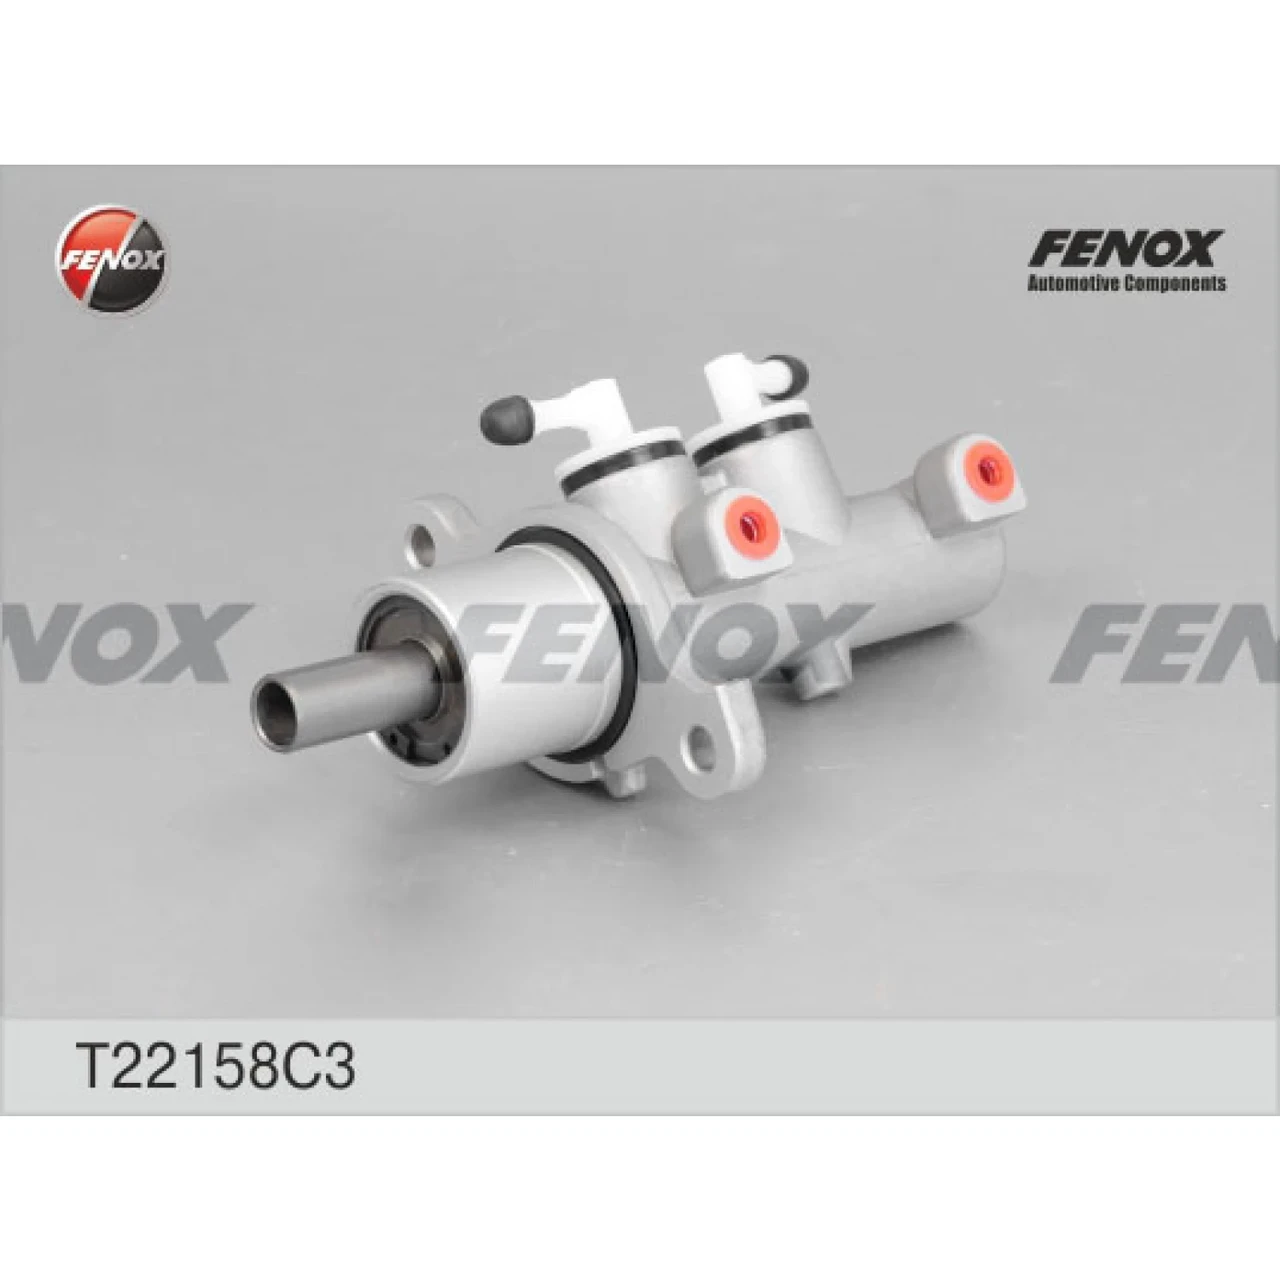 Циліндр гальмівний головний ВАЗ 21214 Fenox (T22158C3)